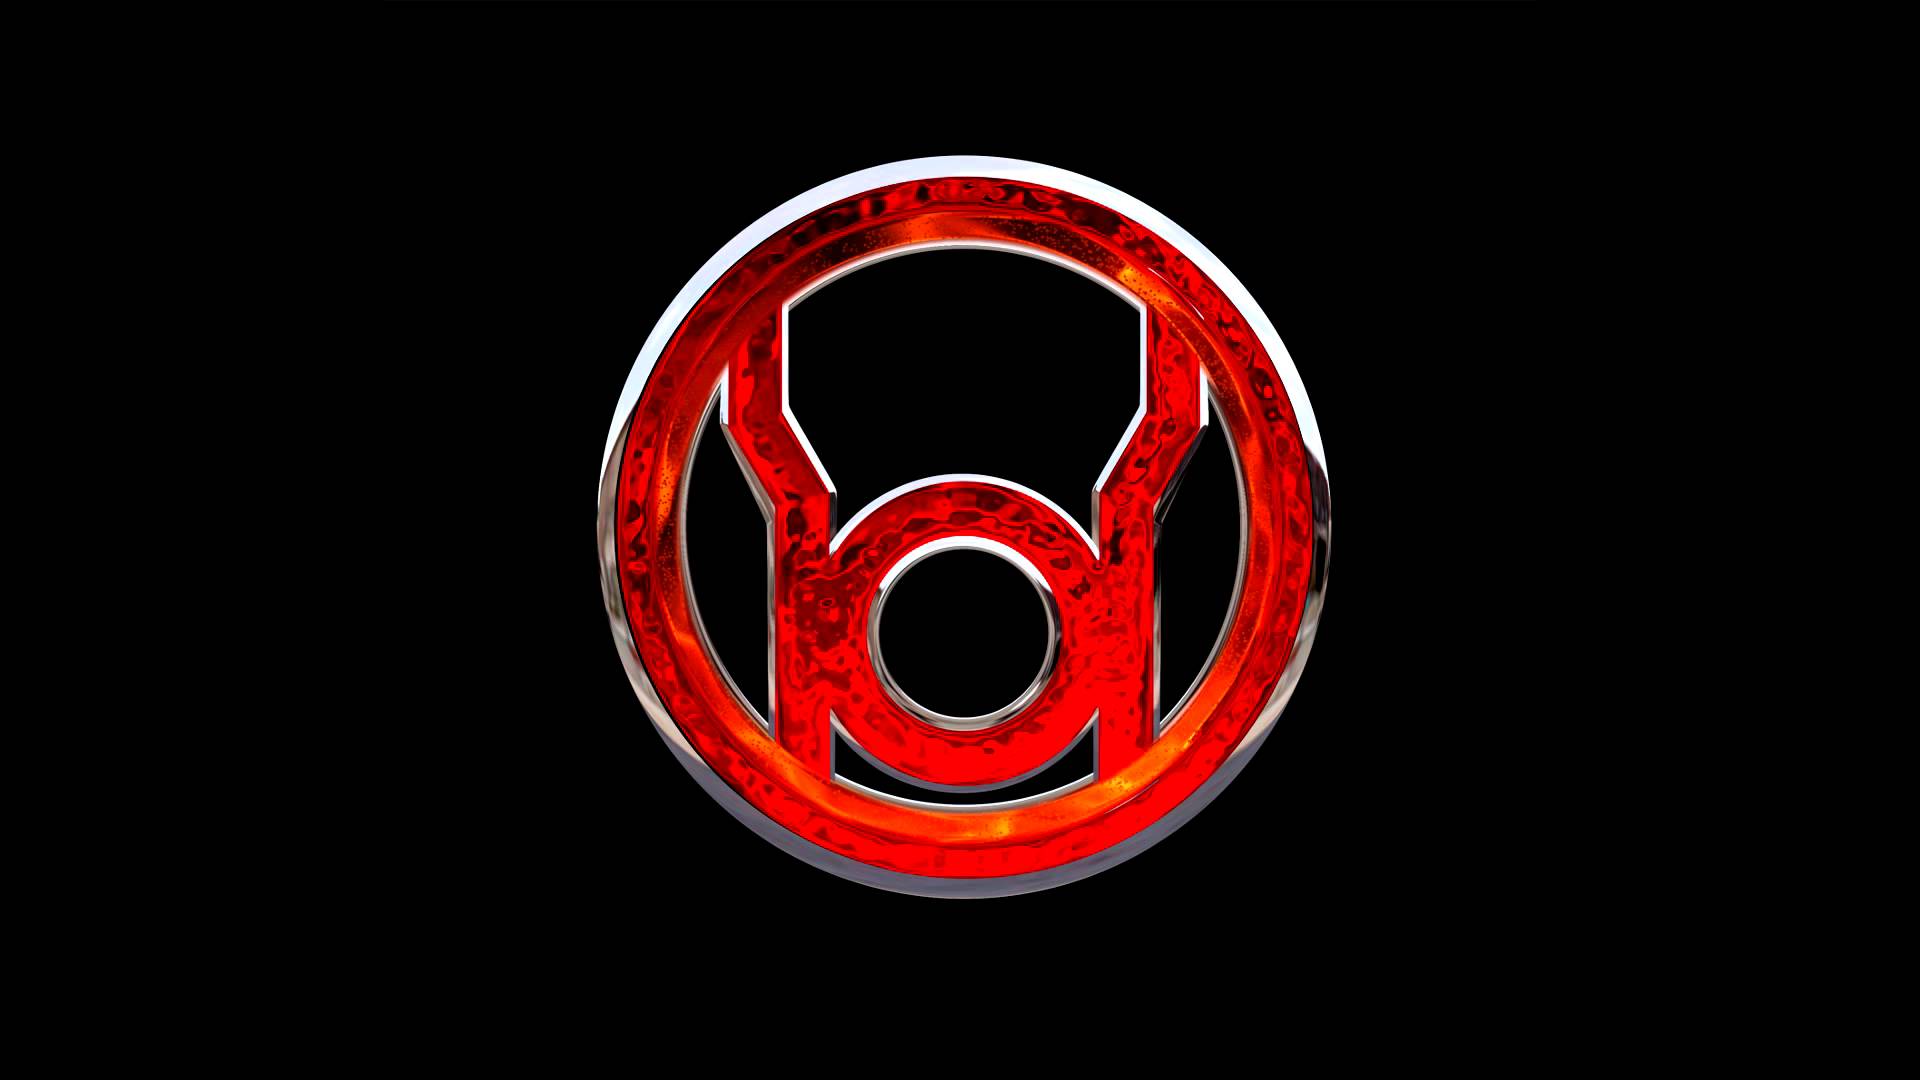 Red Lantern Logo - Red Lantern Wallpapers - Wallpaper Cave